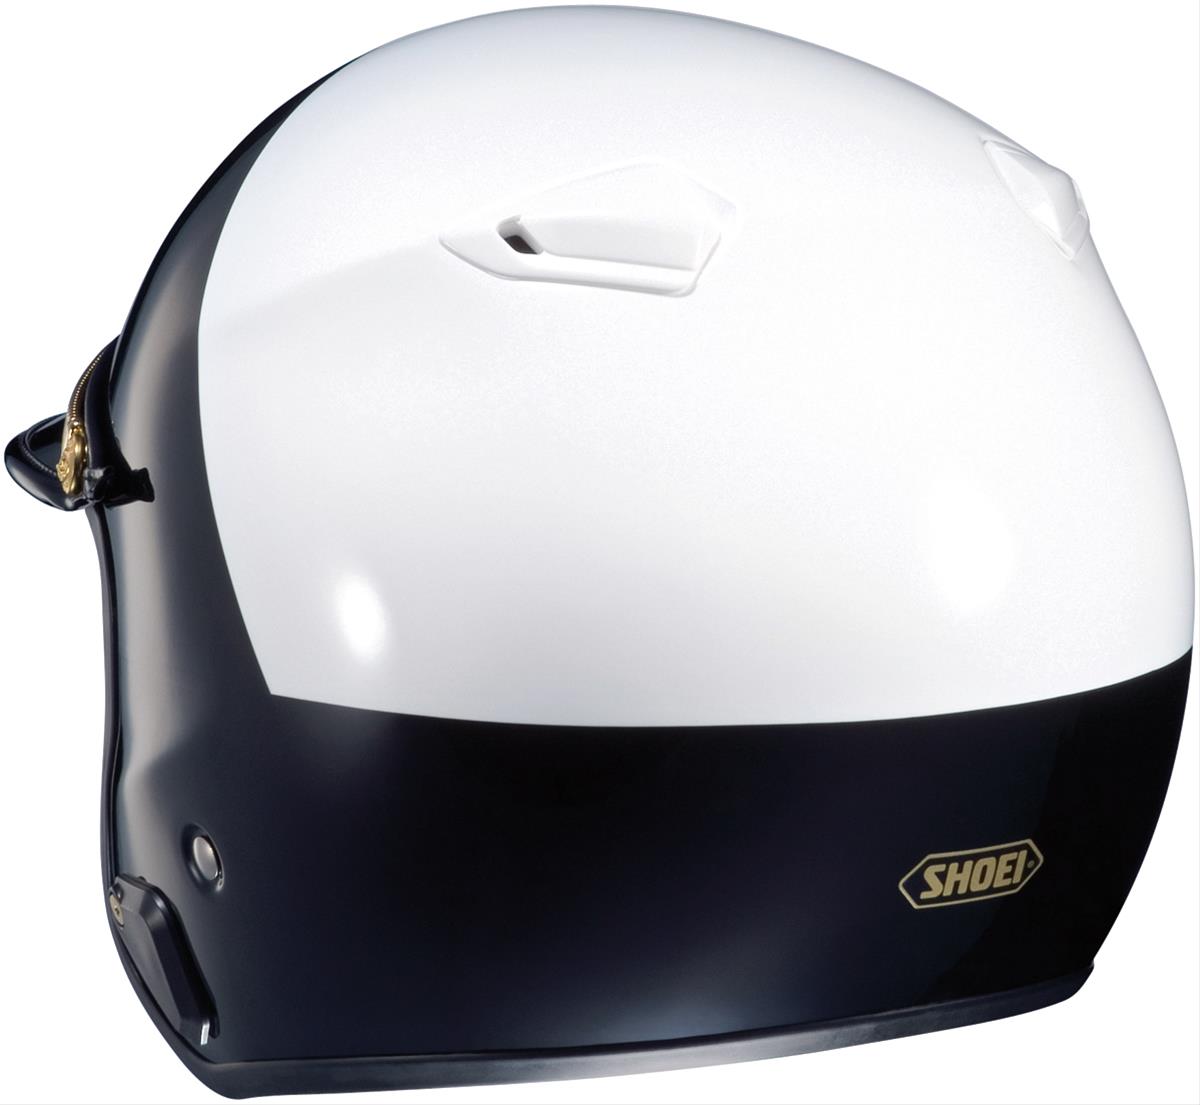 Shoei/Helmet House 04-122 Shoei RJ Platinum-R Helmets | Summit Racing